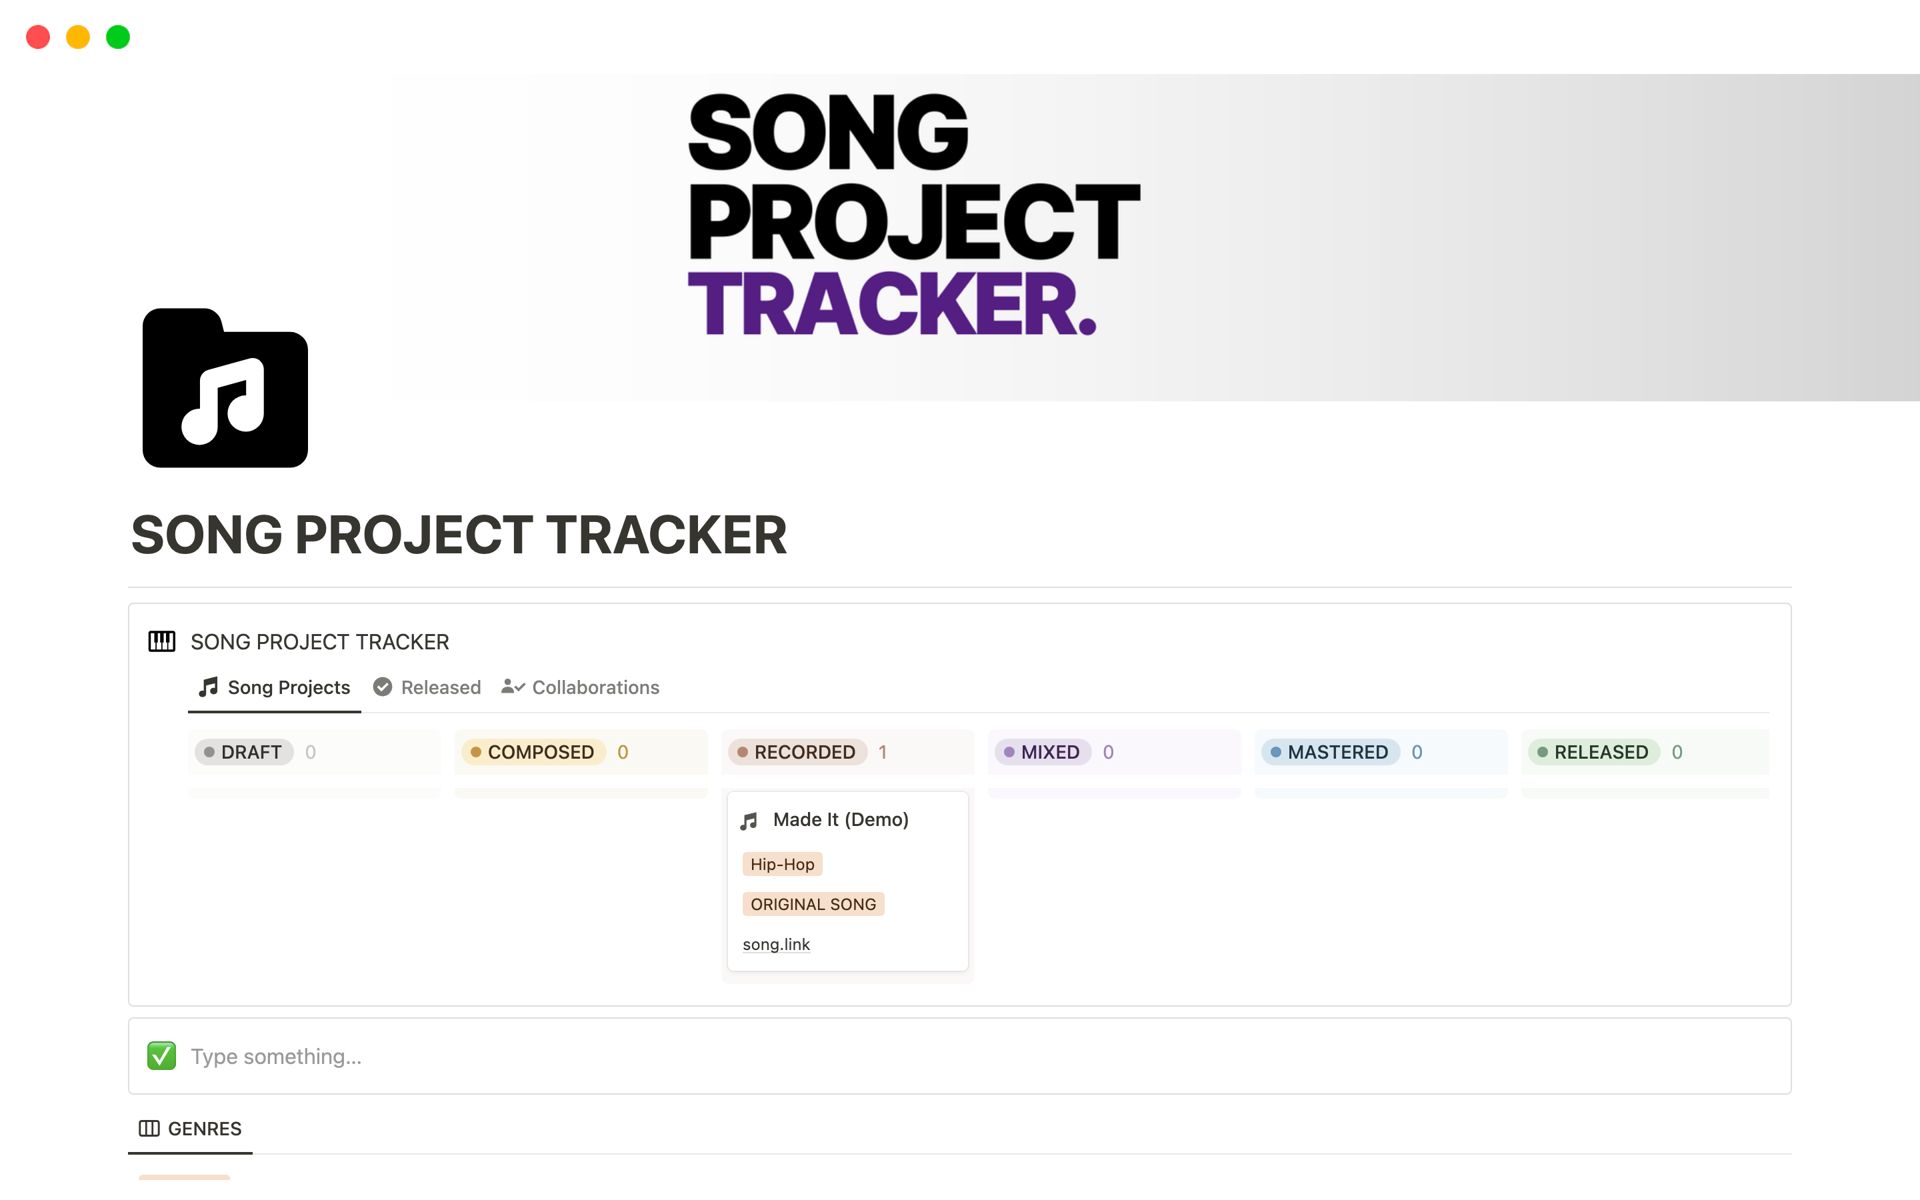 Aperçu du modèle de Song Project Tracker